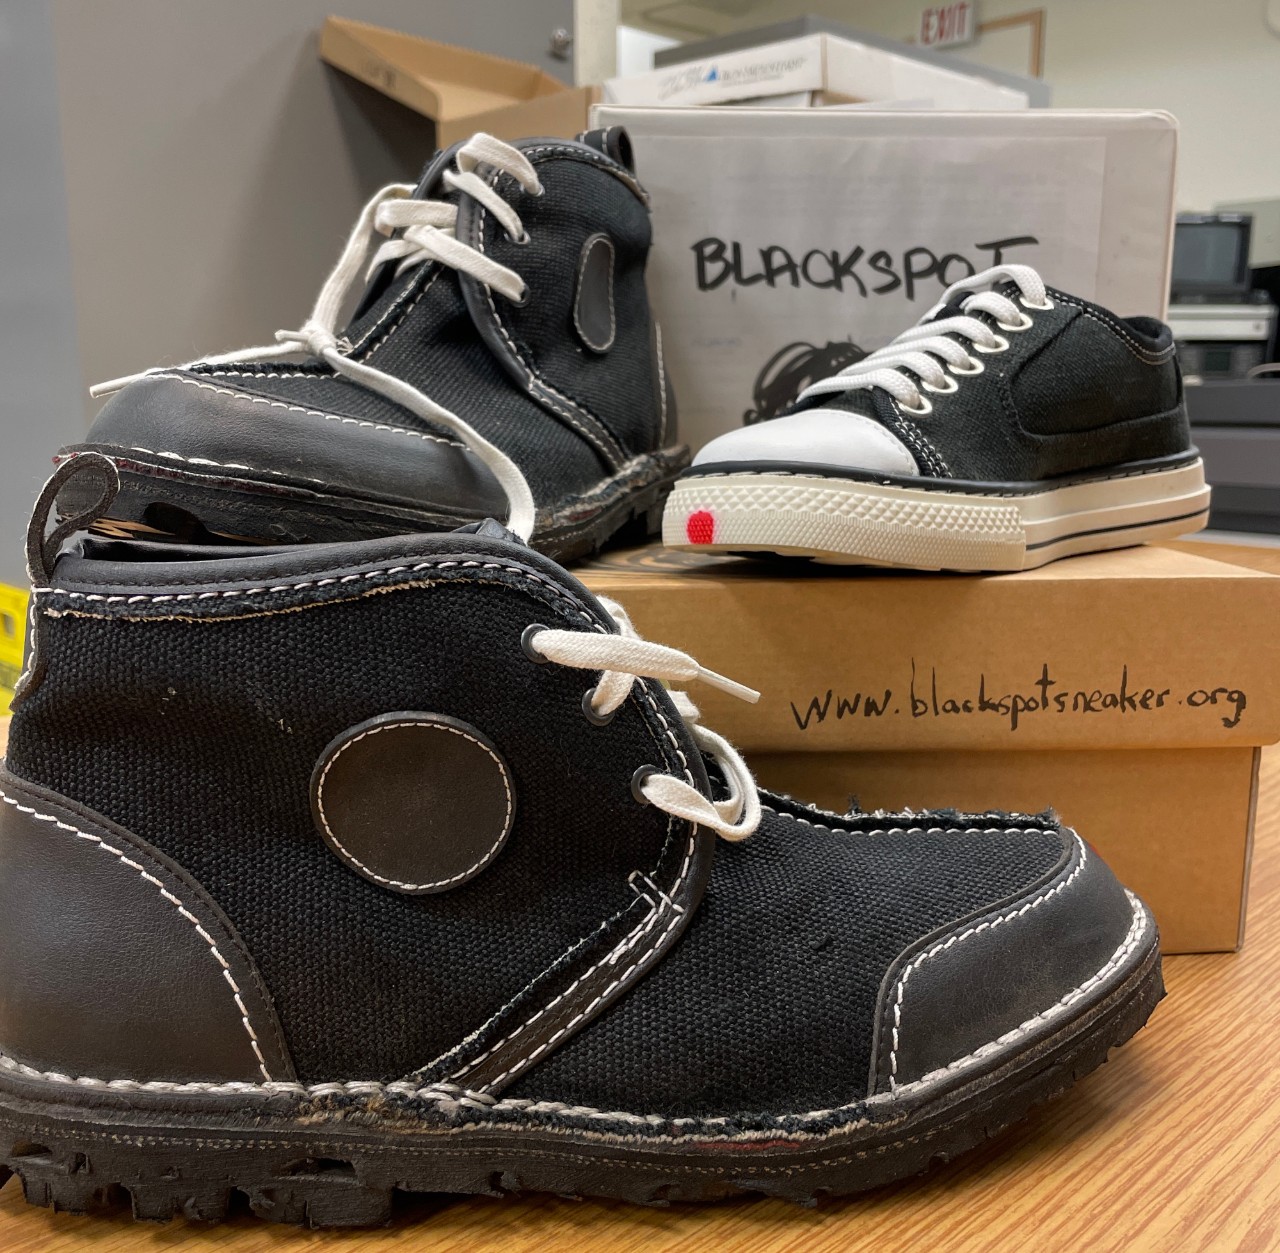 Blackspot shoes: original design and v. 2.0 